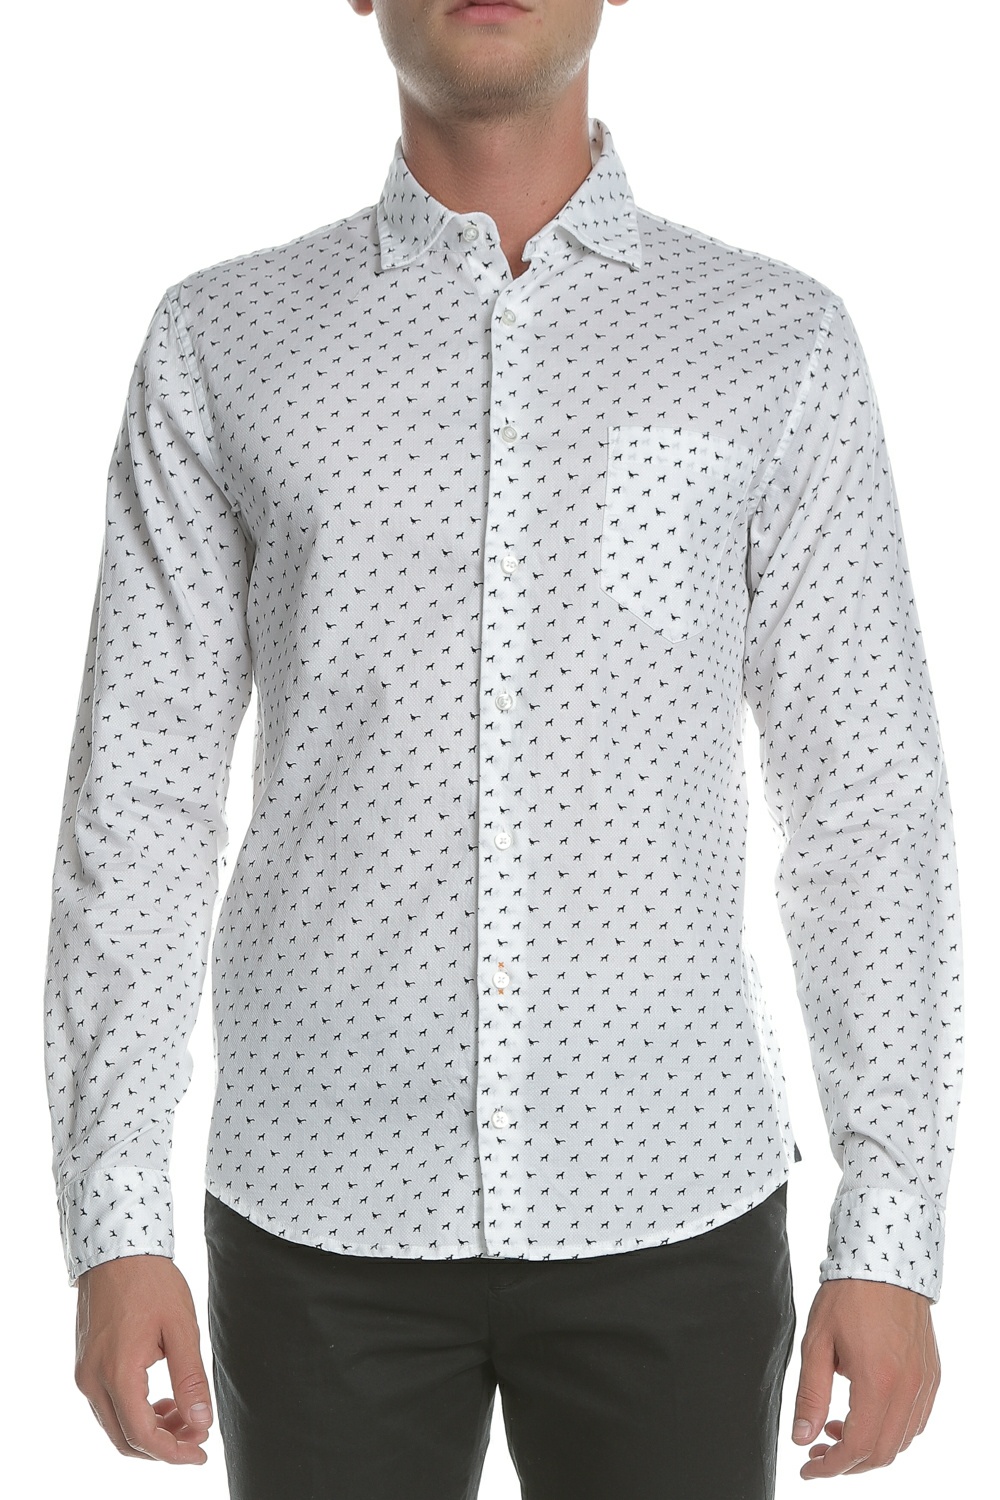 Ανδρικά/Ρούχα/Πουκάμισα/Μακρυμάνικα BOSS - Ανδρικό πουκάμισο BOSS Mypop λευκό μαύρο